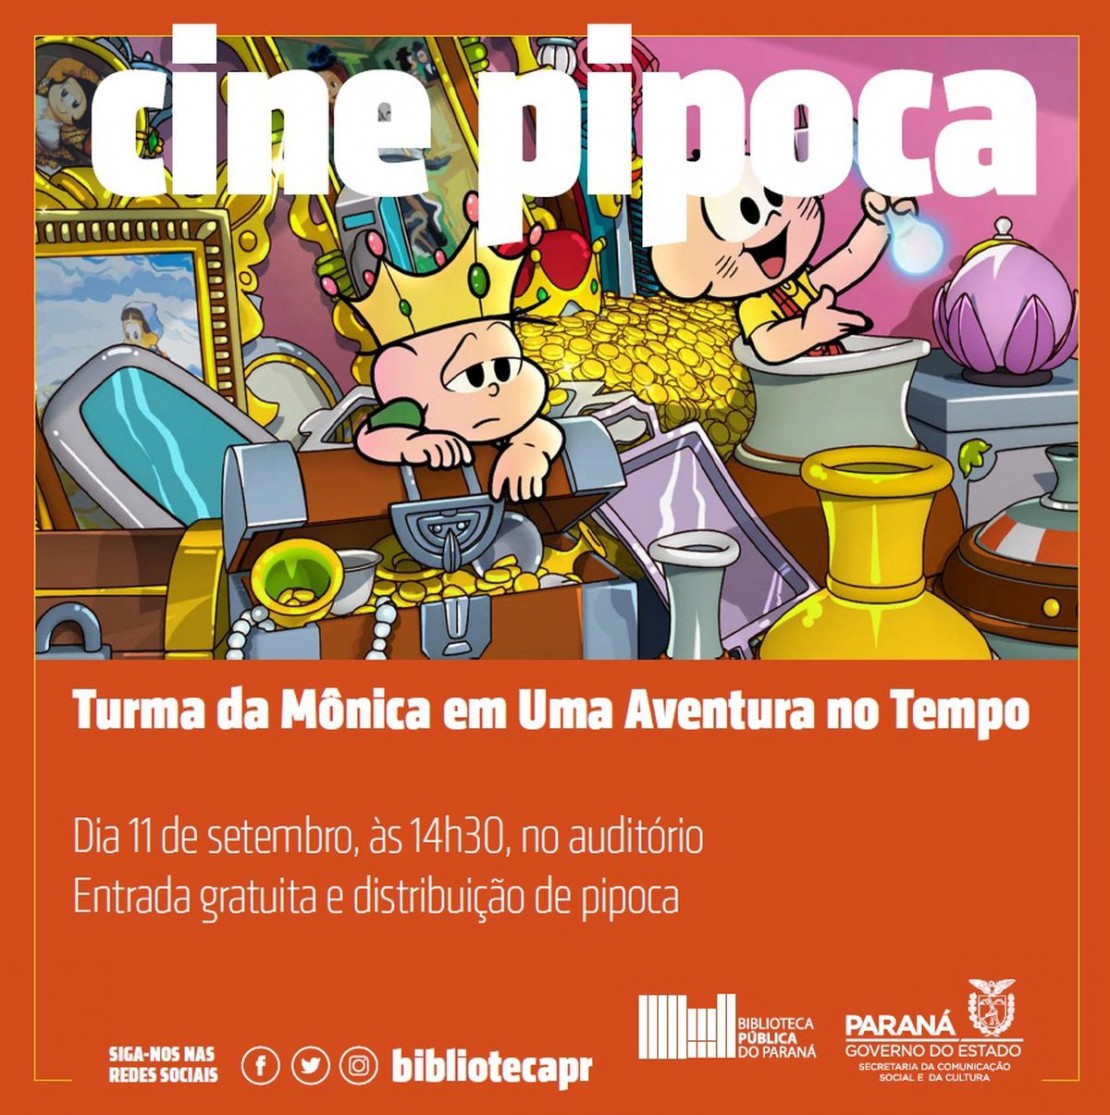 Foto: Divulgação/Biblioteca Pública do Paraná